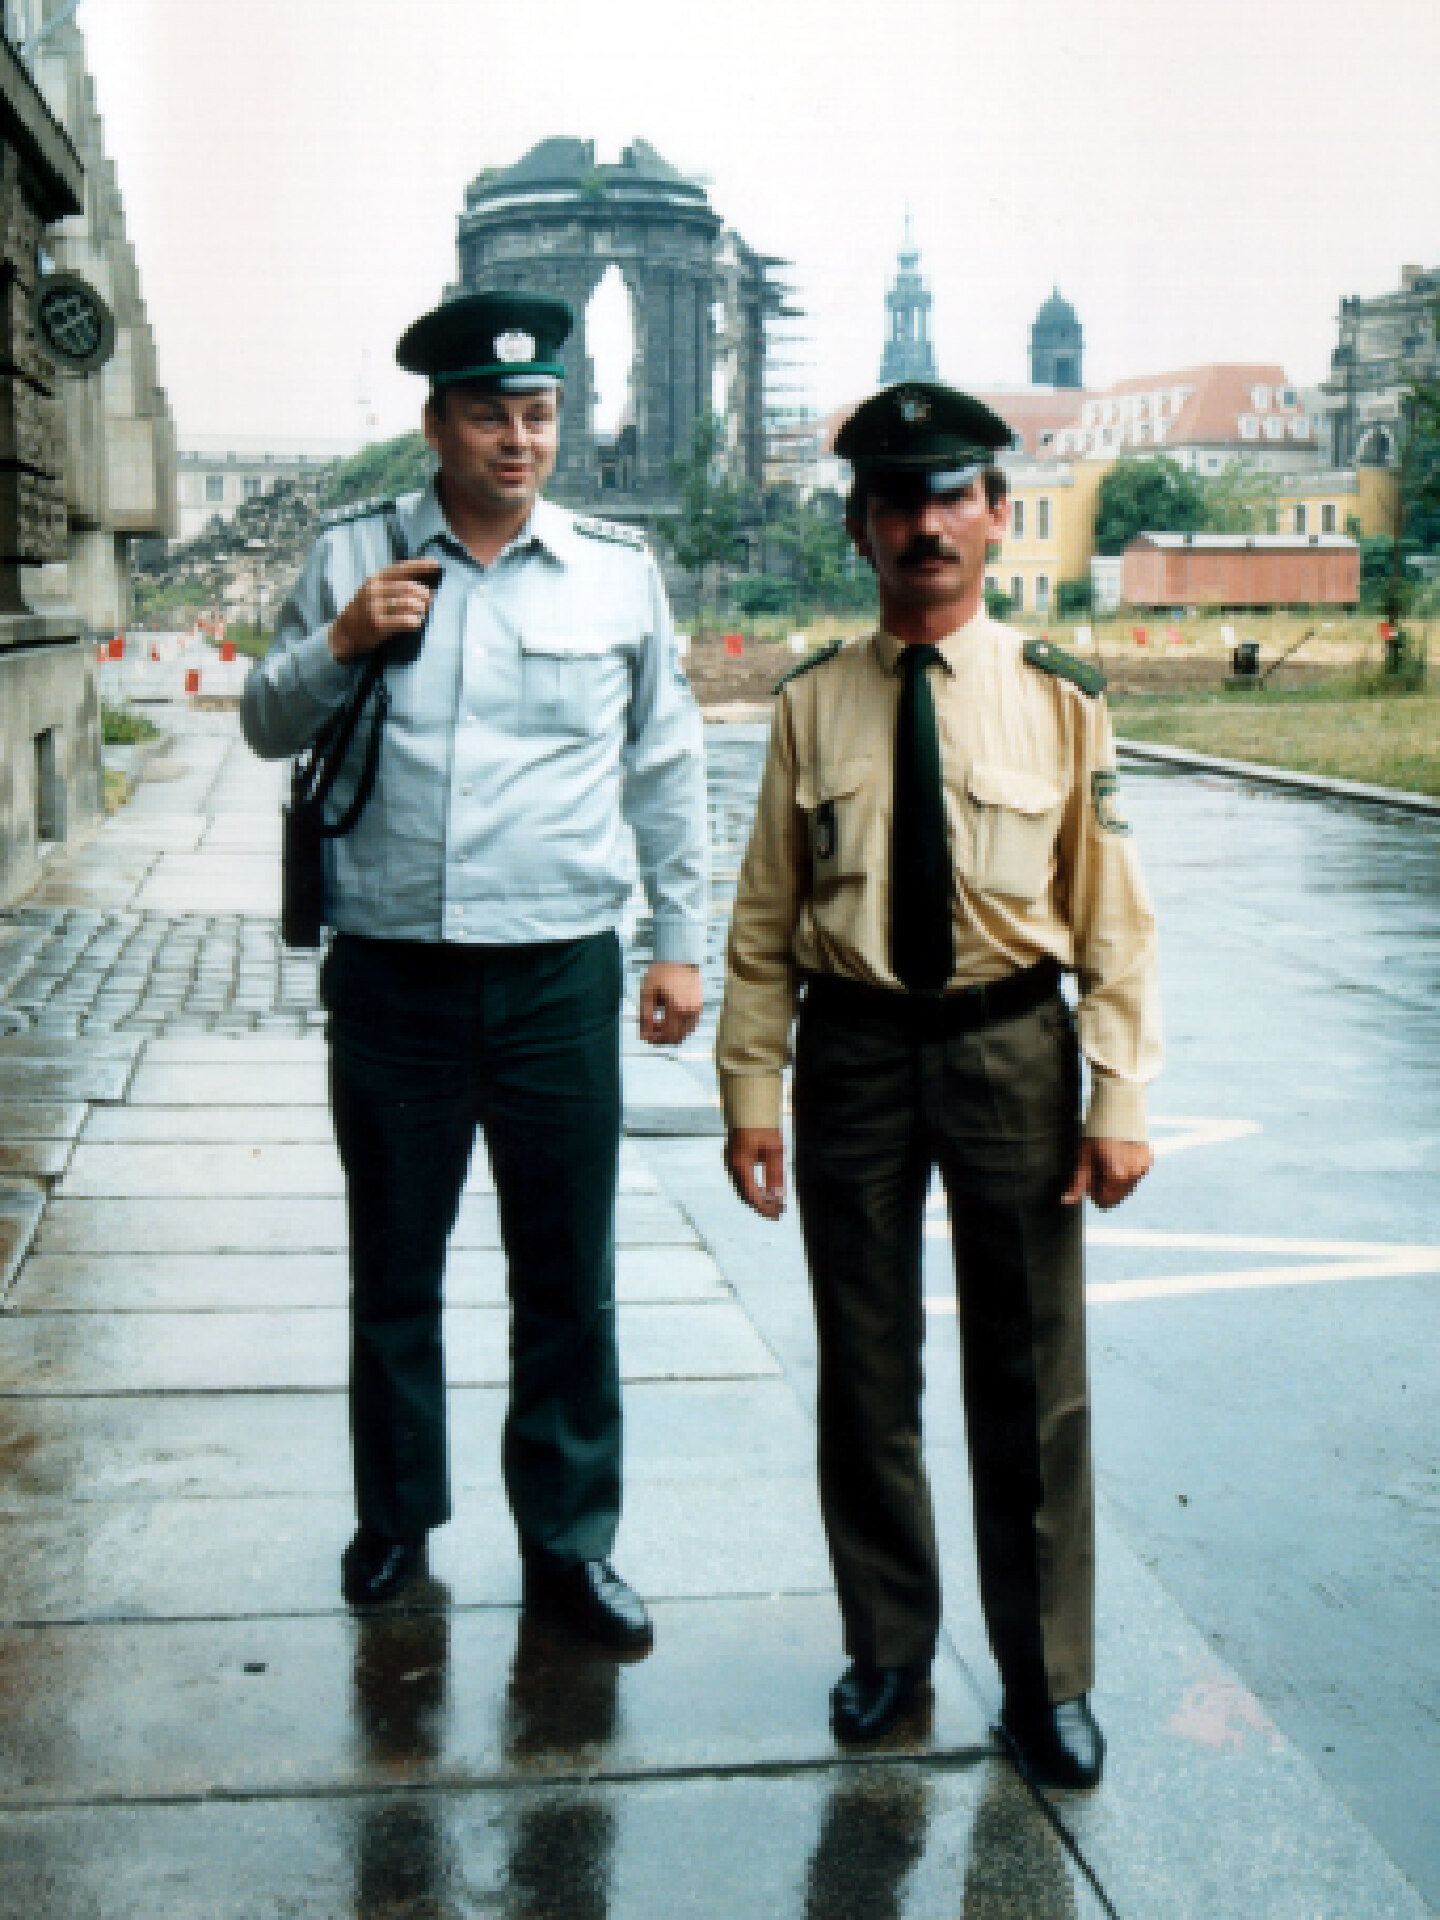 Das Farbfoto zeigt zwei Polizisten auf einem Fußweg in Dresden. Der linke Polizist trägt eine blaue Uniform, der rechte Polizist stammt aus Bayern und trägt eine grün-beige Uniform.